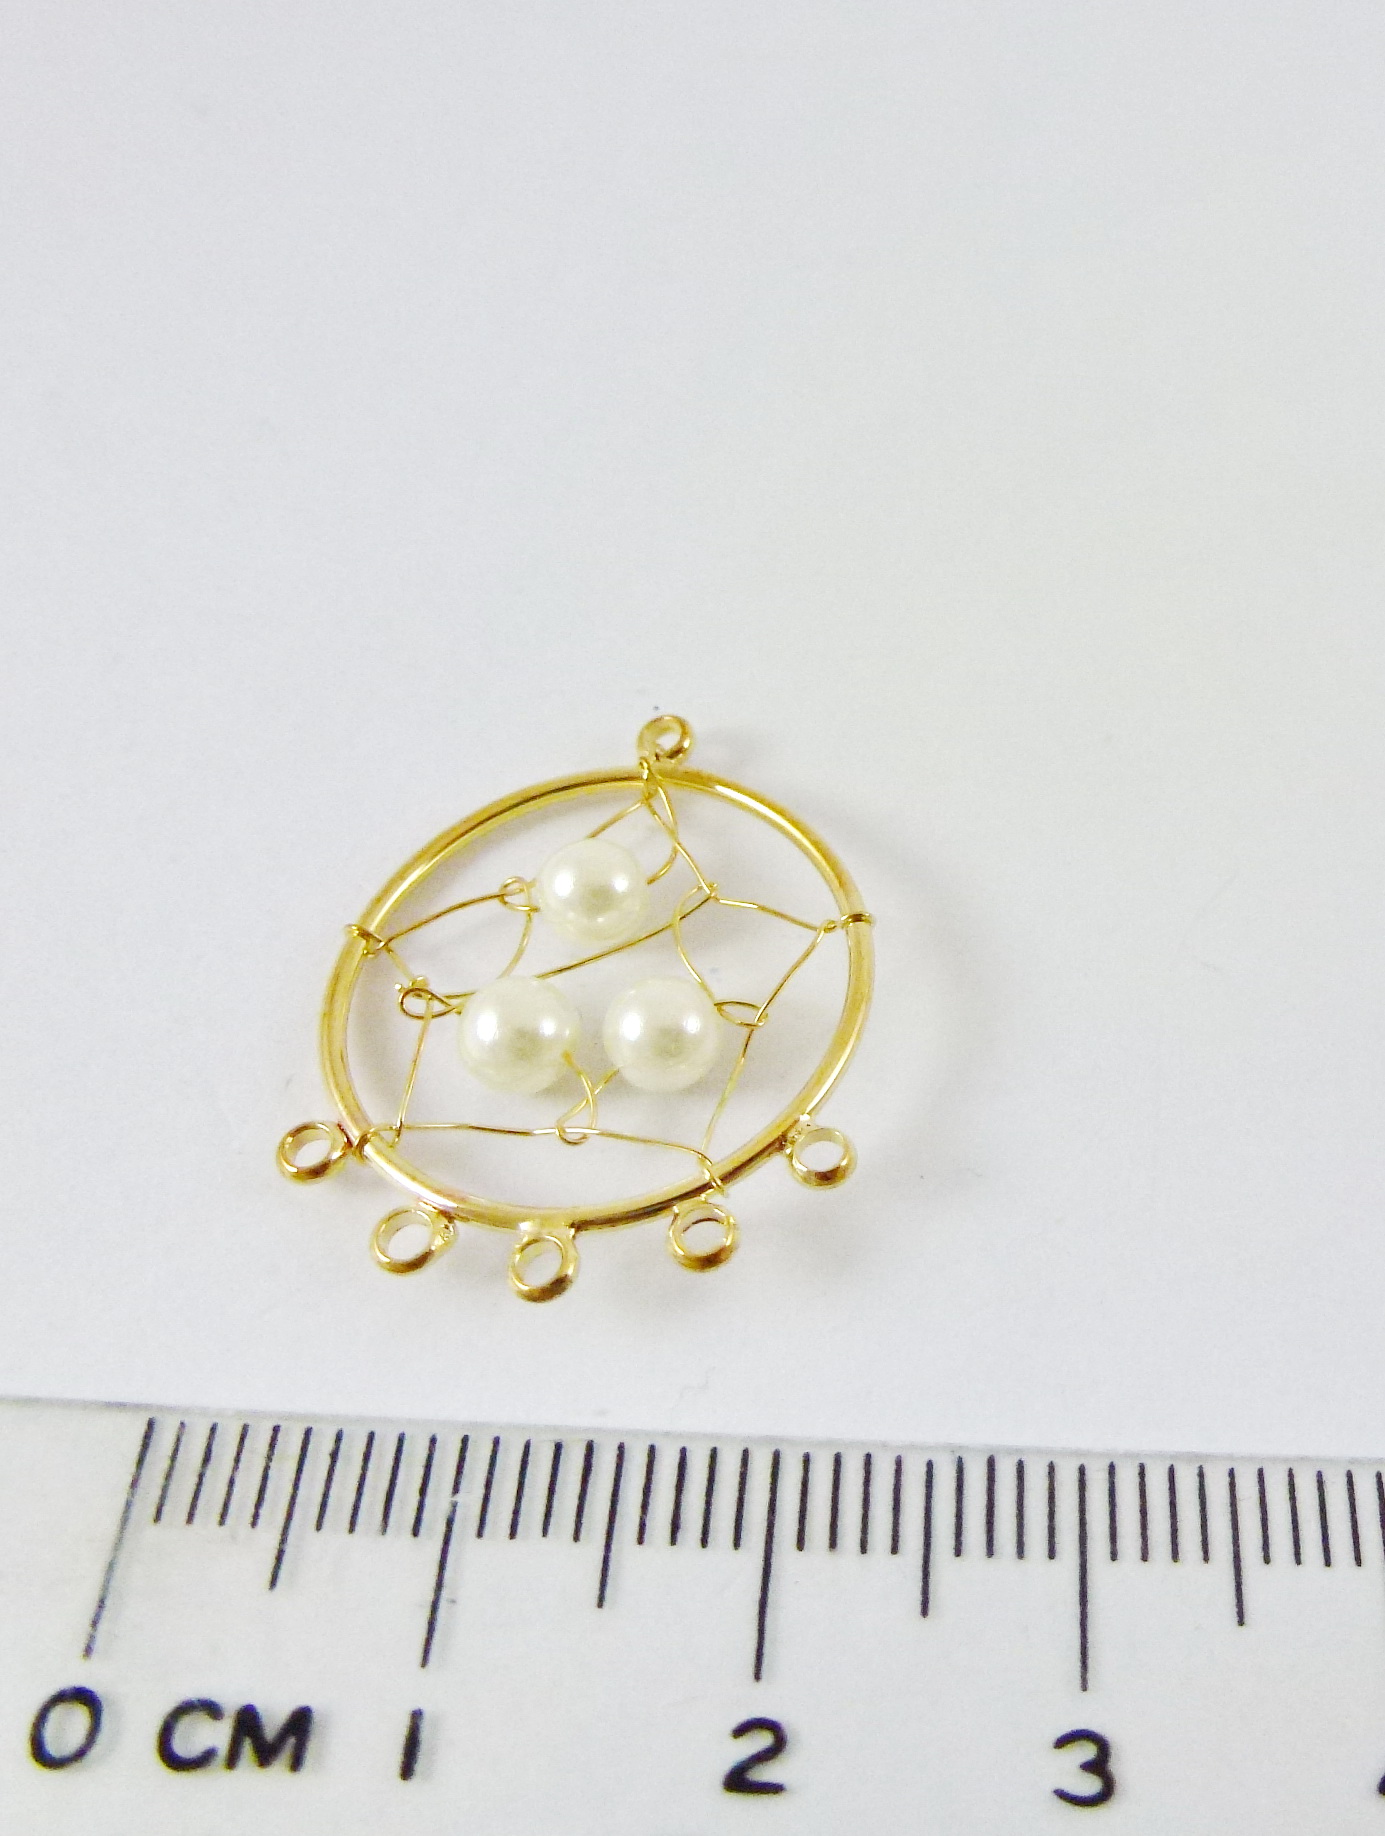 20mm銅鍍金色六孔圓形補夢網-珍珠